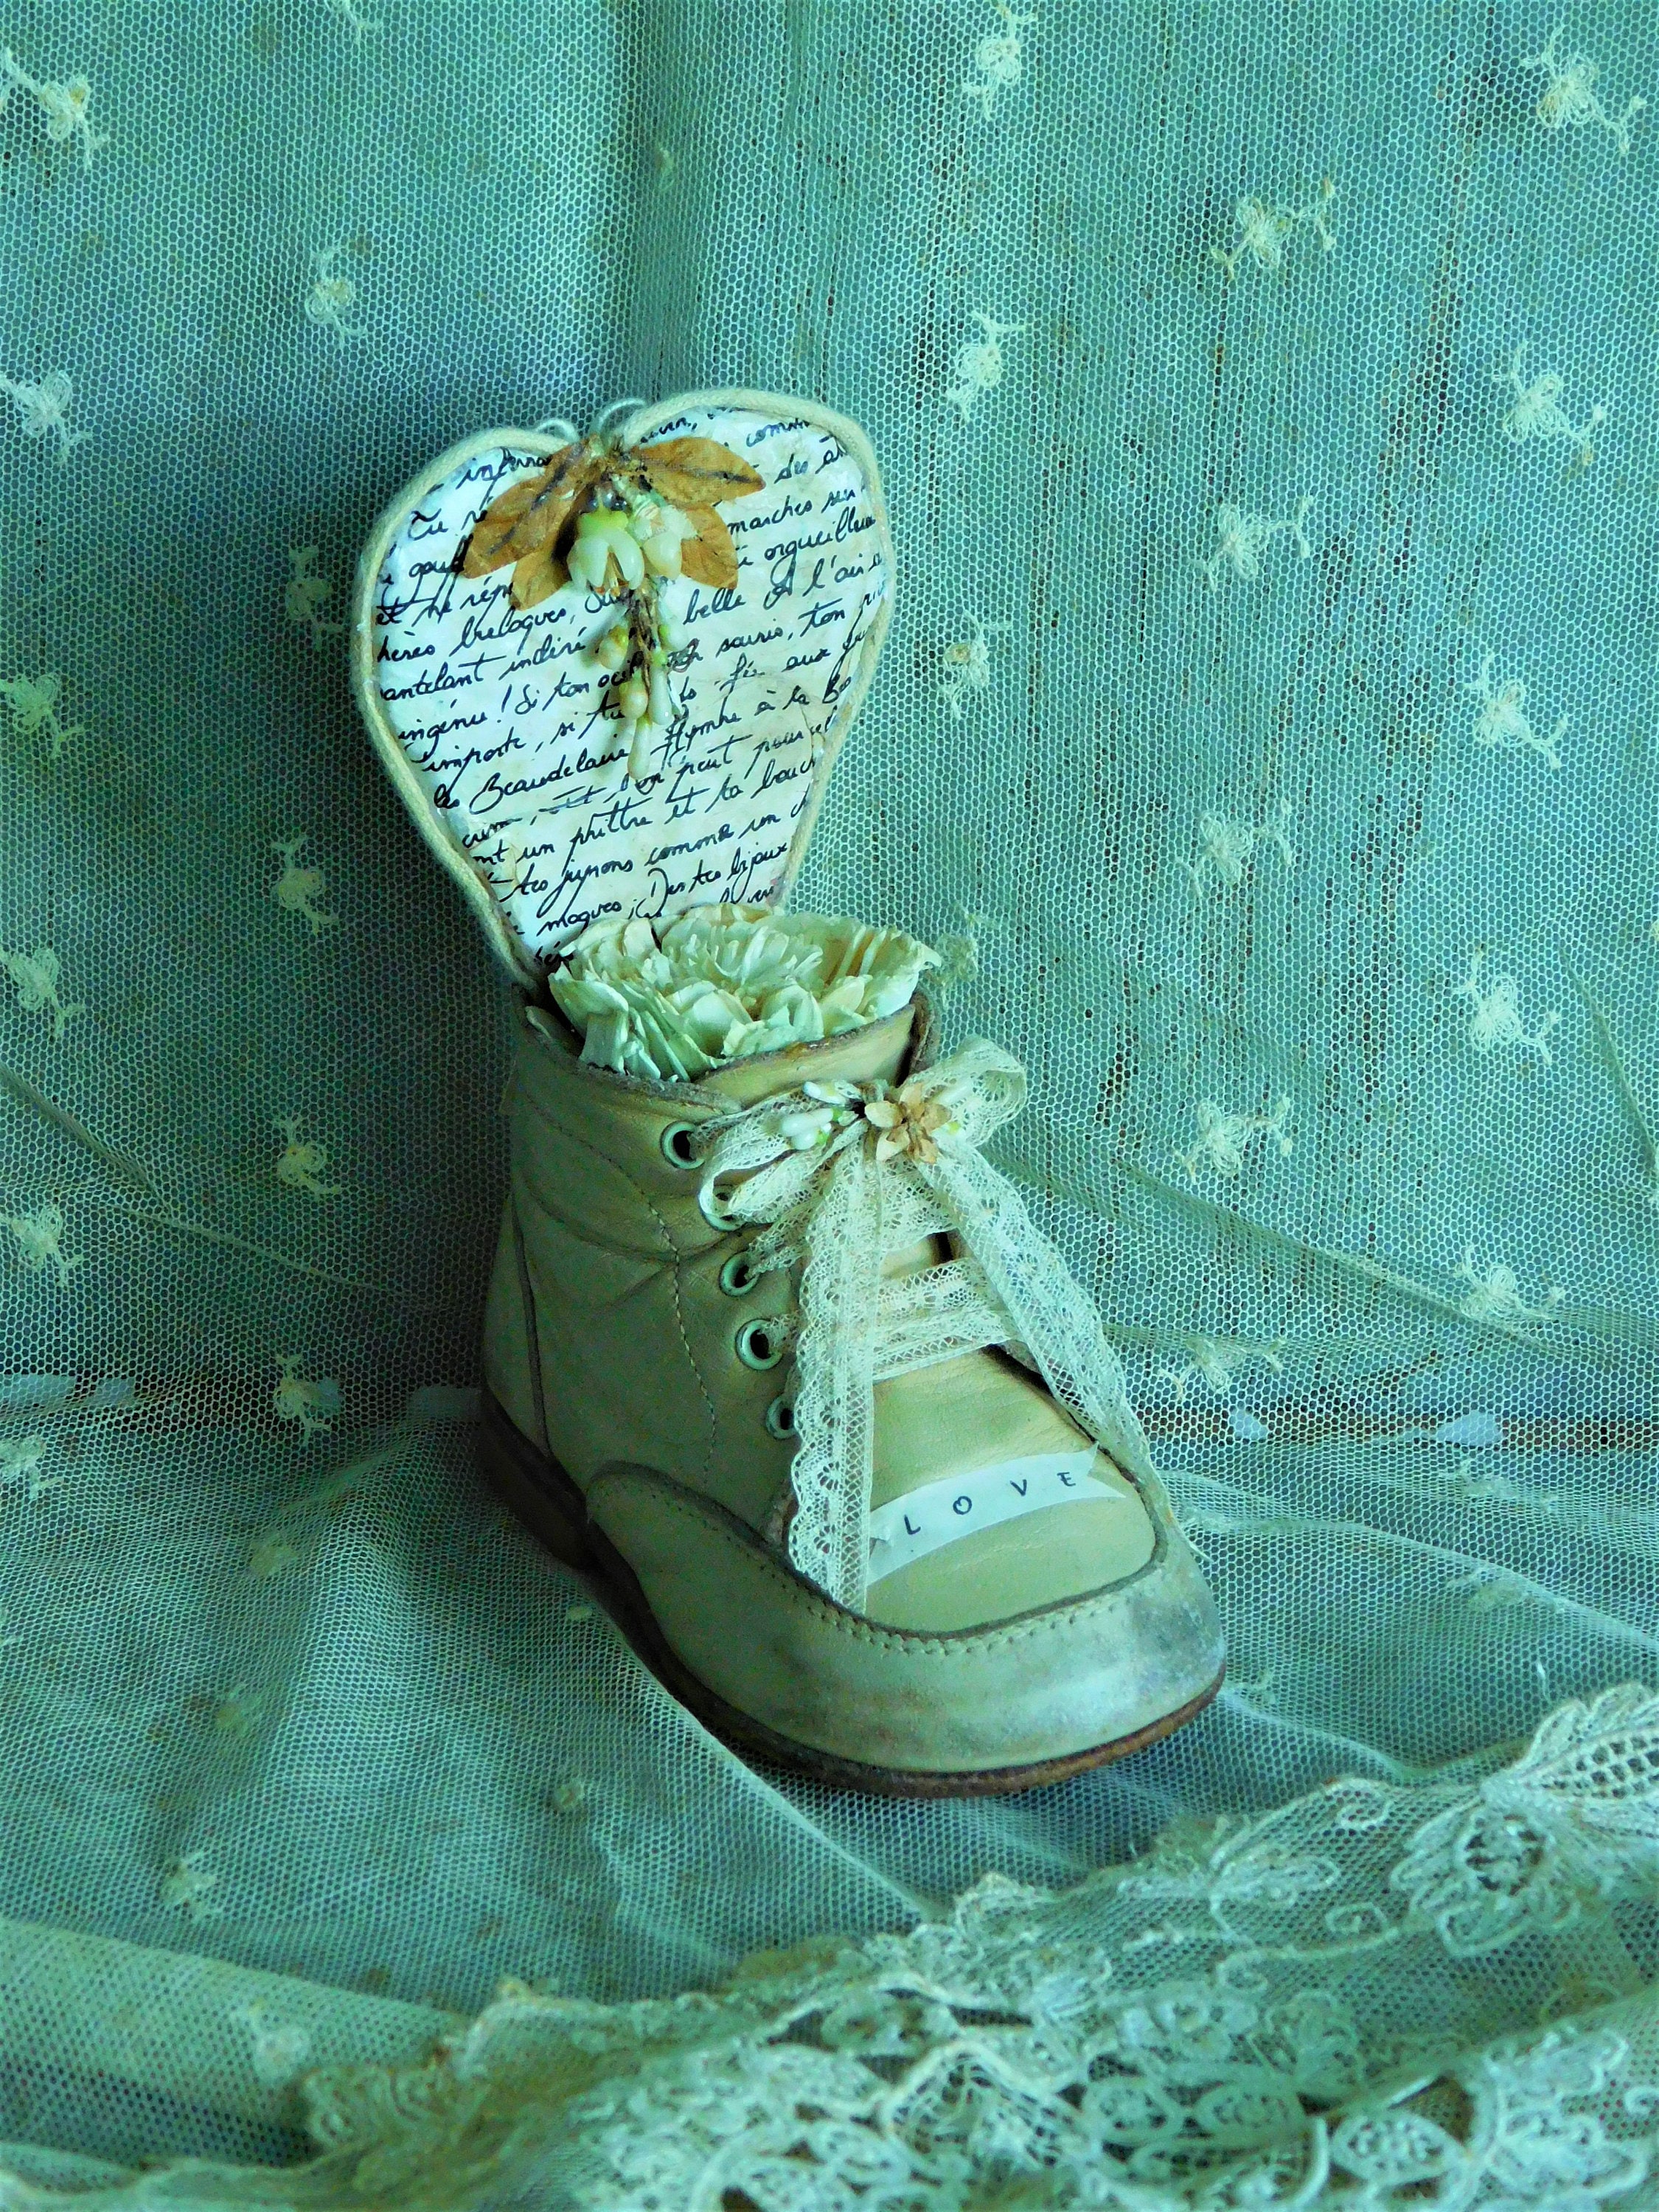 Chaussure de Bébé Modifiée Repurposed Vintage Baby Shoe Français Nordic Decor Shower Gift